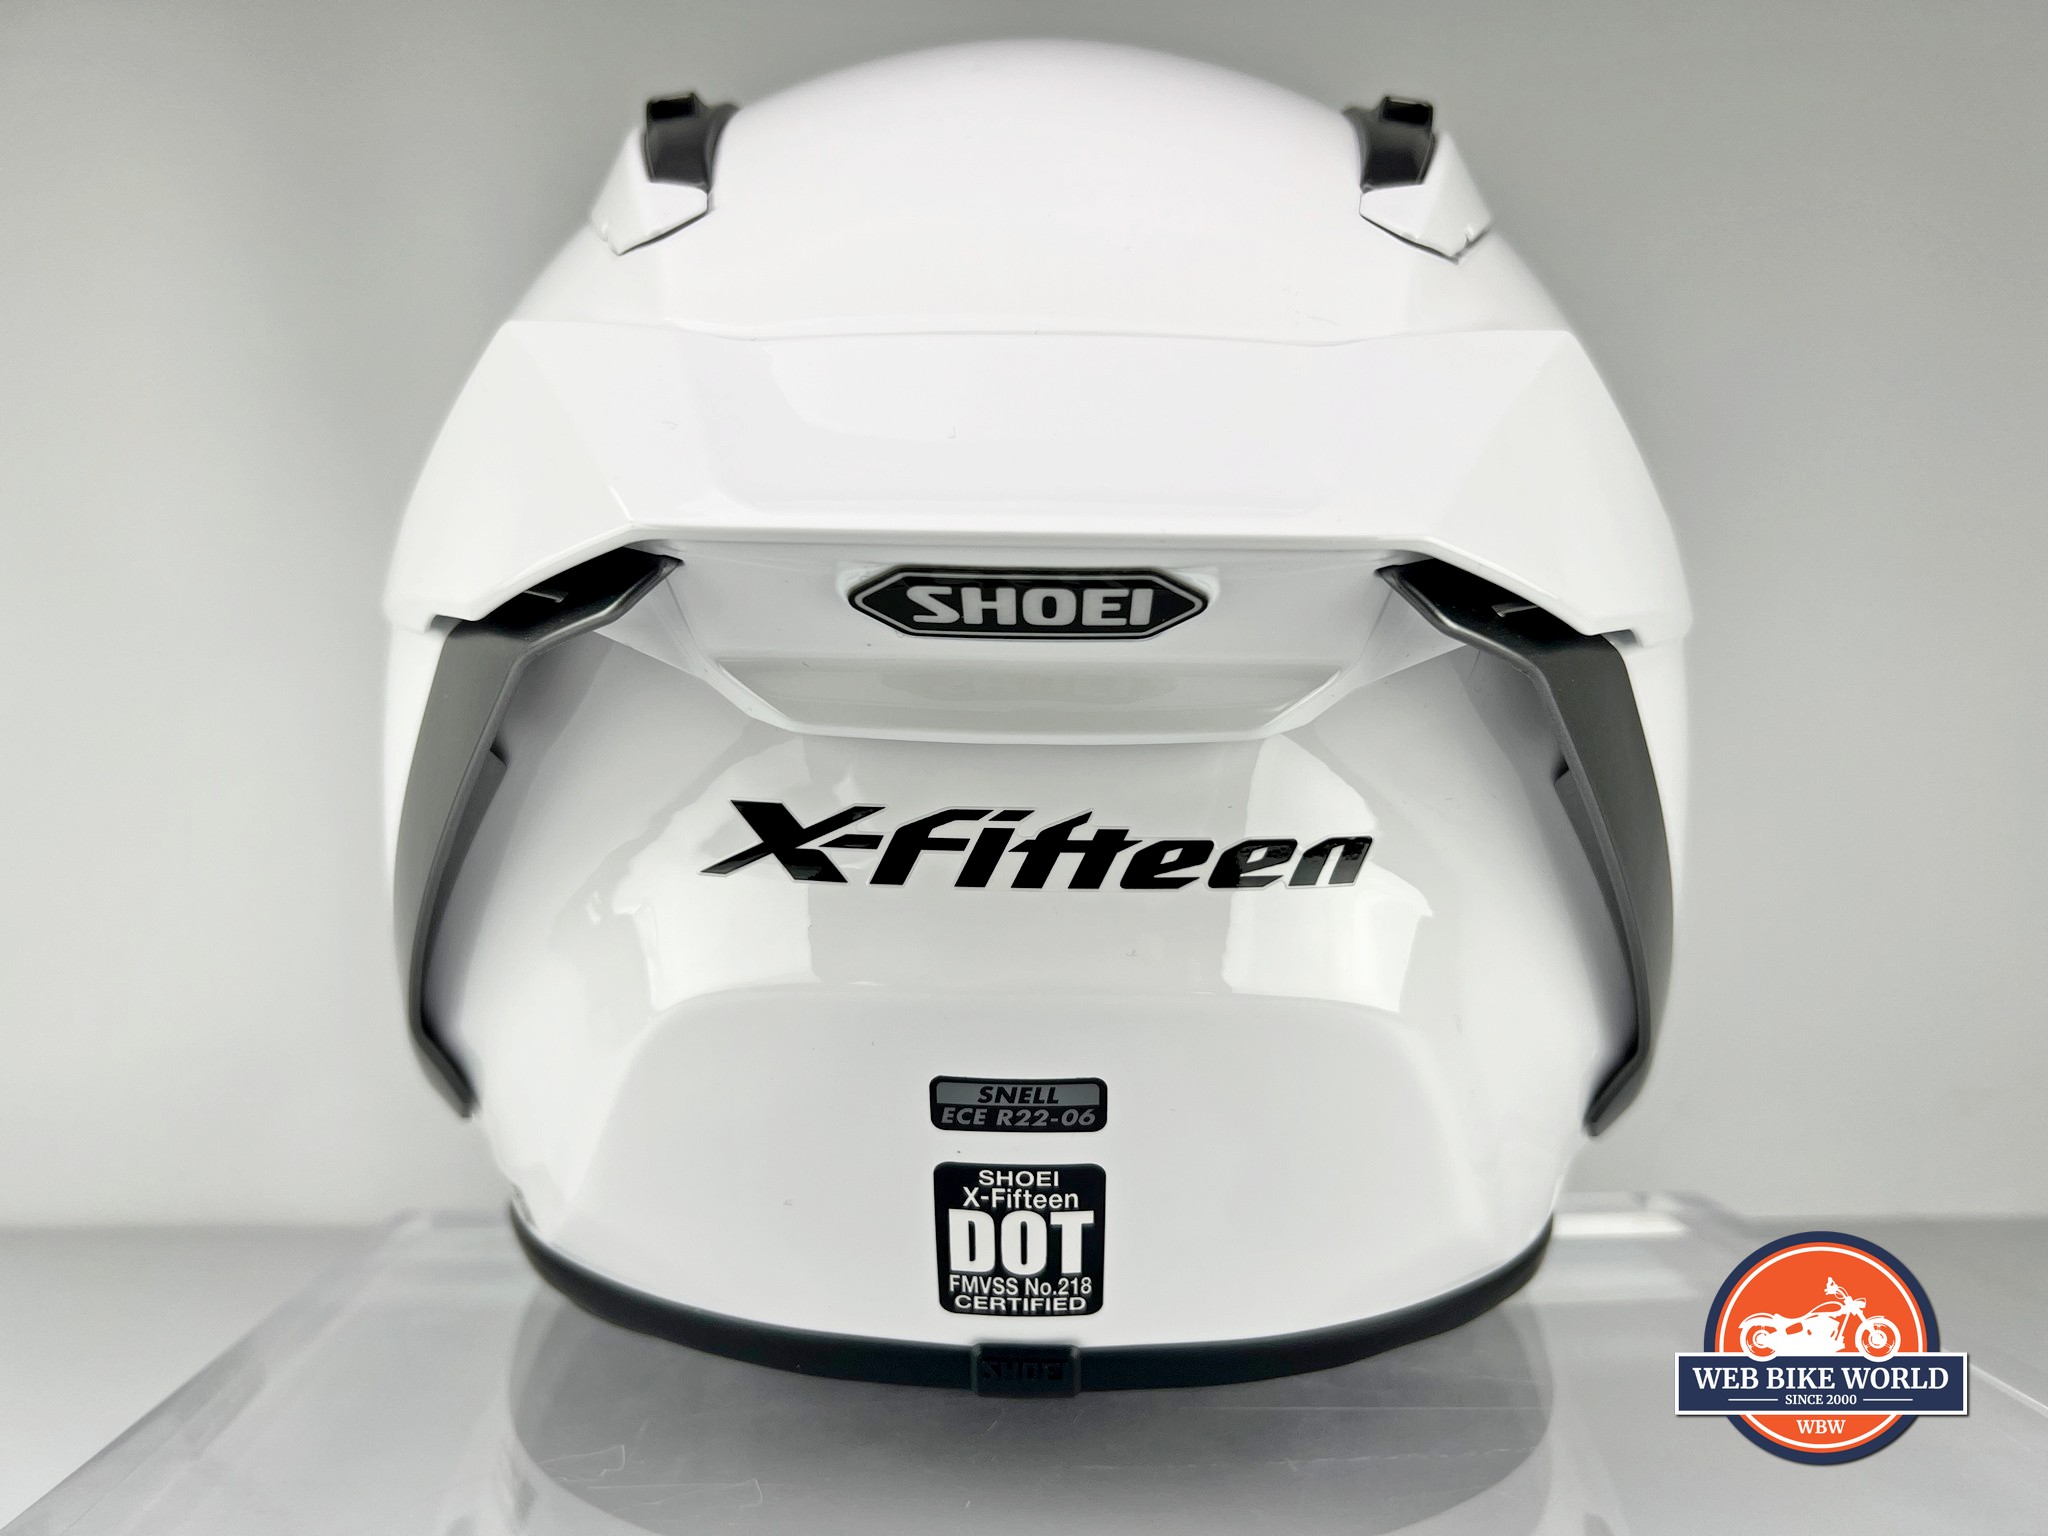 Rear view of the Shoei X-15 helmet